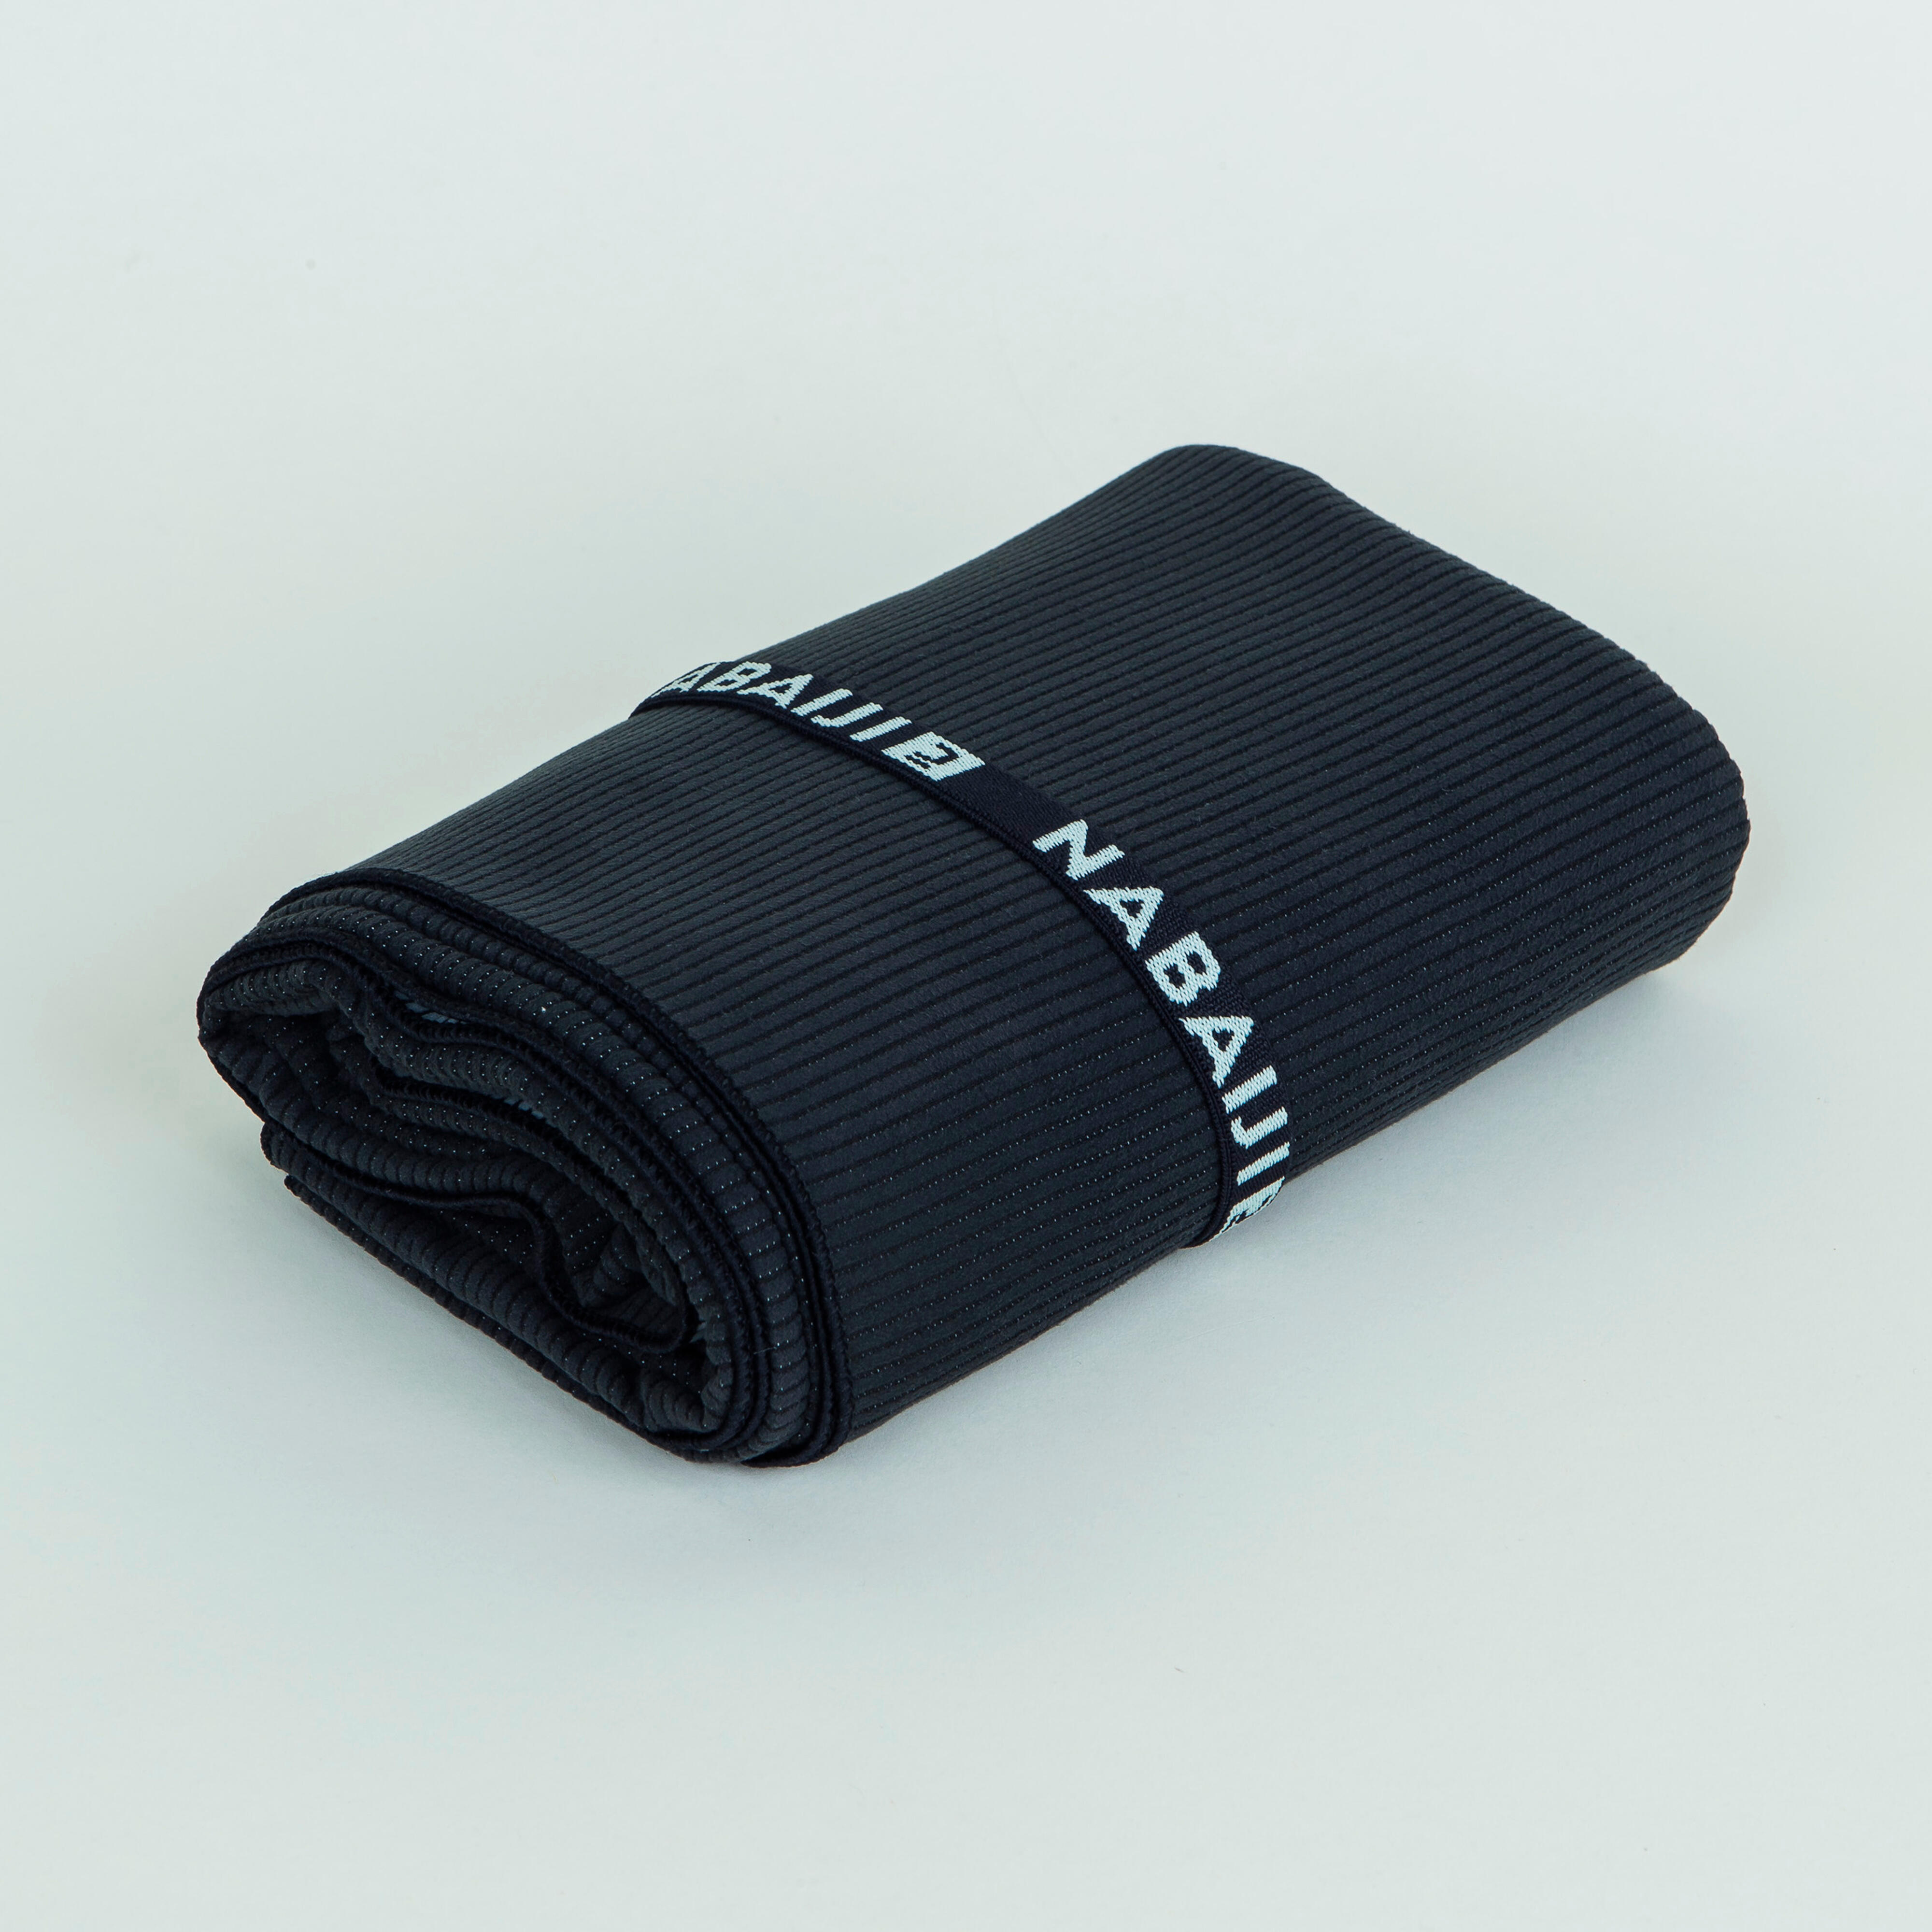 Serviette de bain microfibre taille XL 110 x 175 cm - noir/gris - NABAIJI